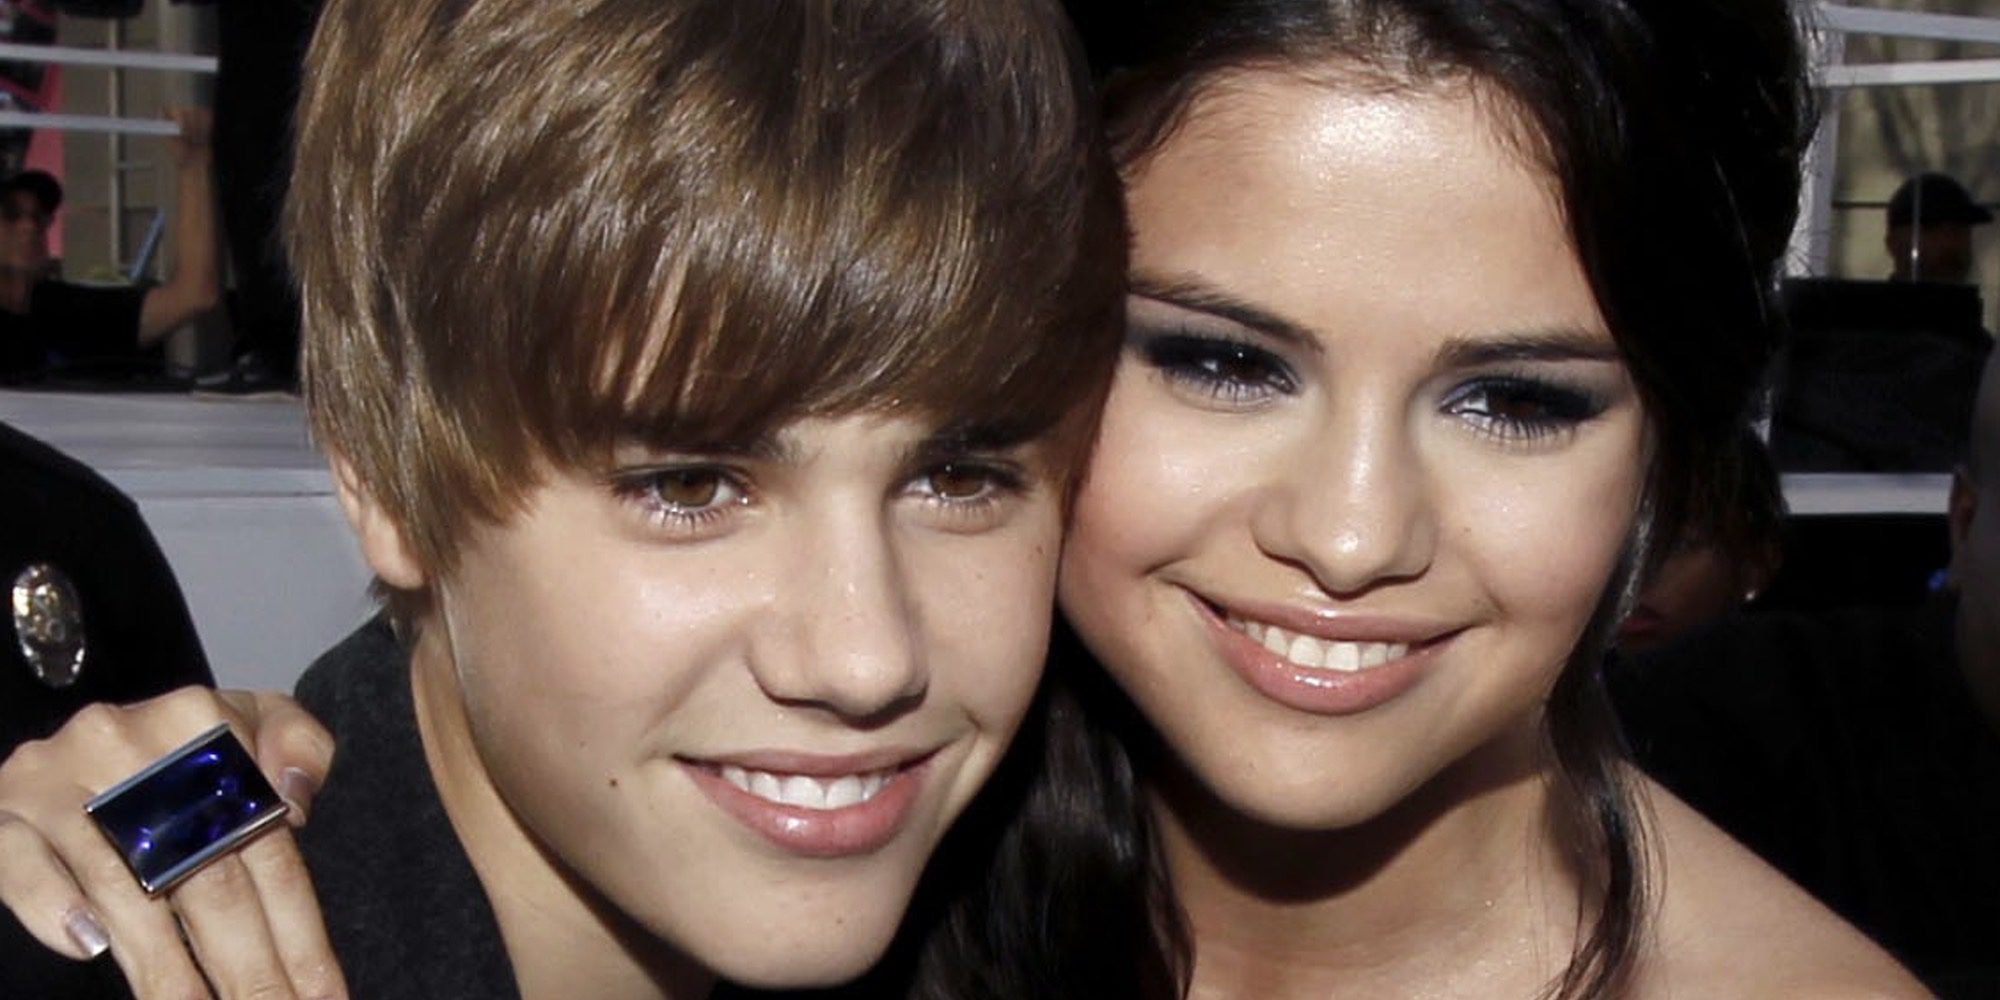 La madre de Selena Gomez no está contenta con la reconciliación de su hija y Justin Bieber